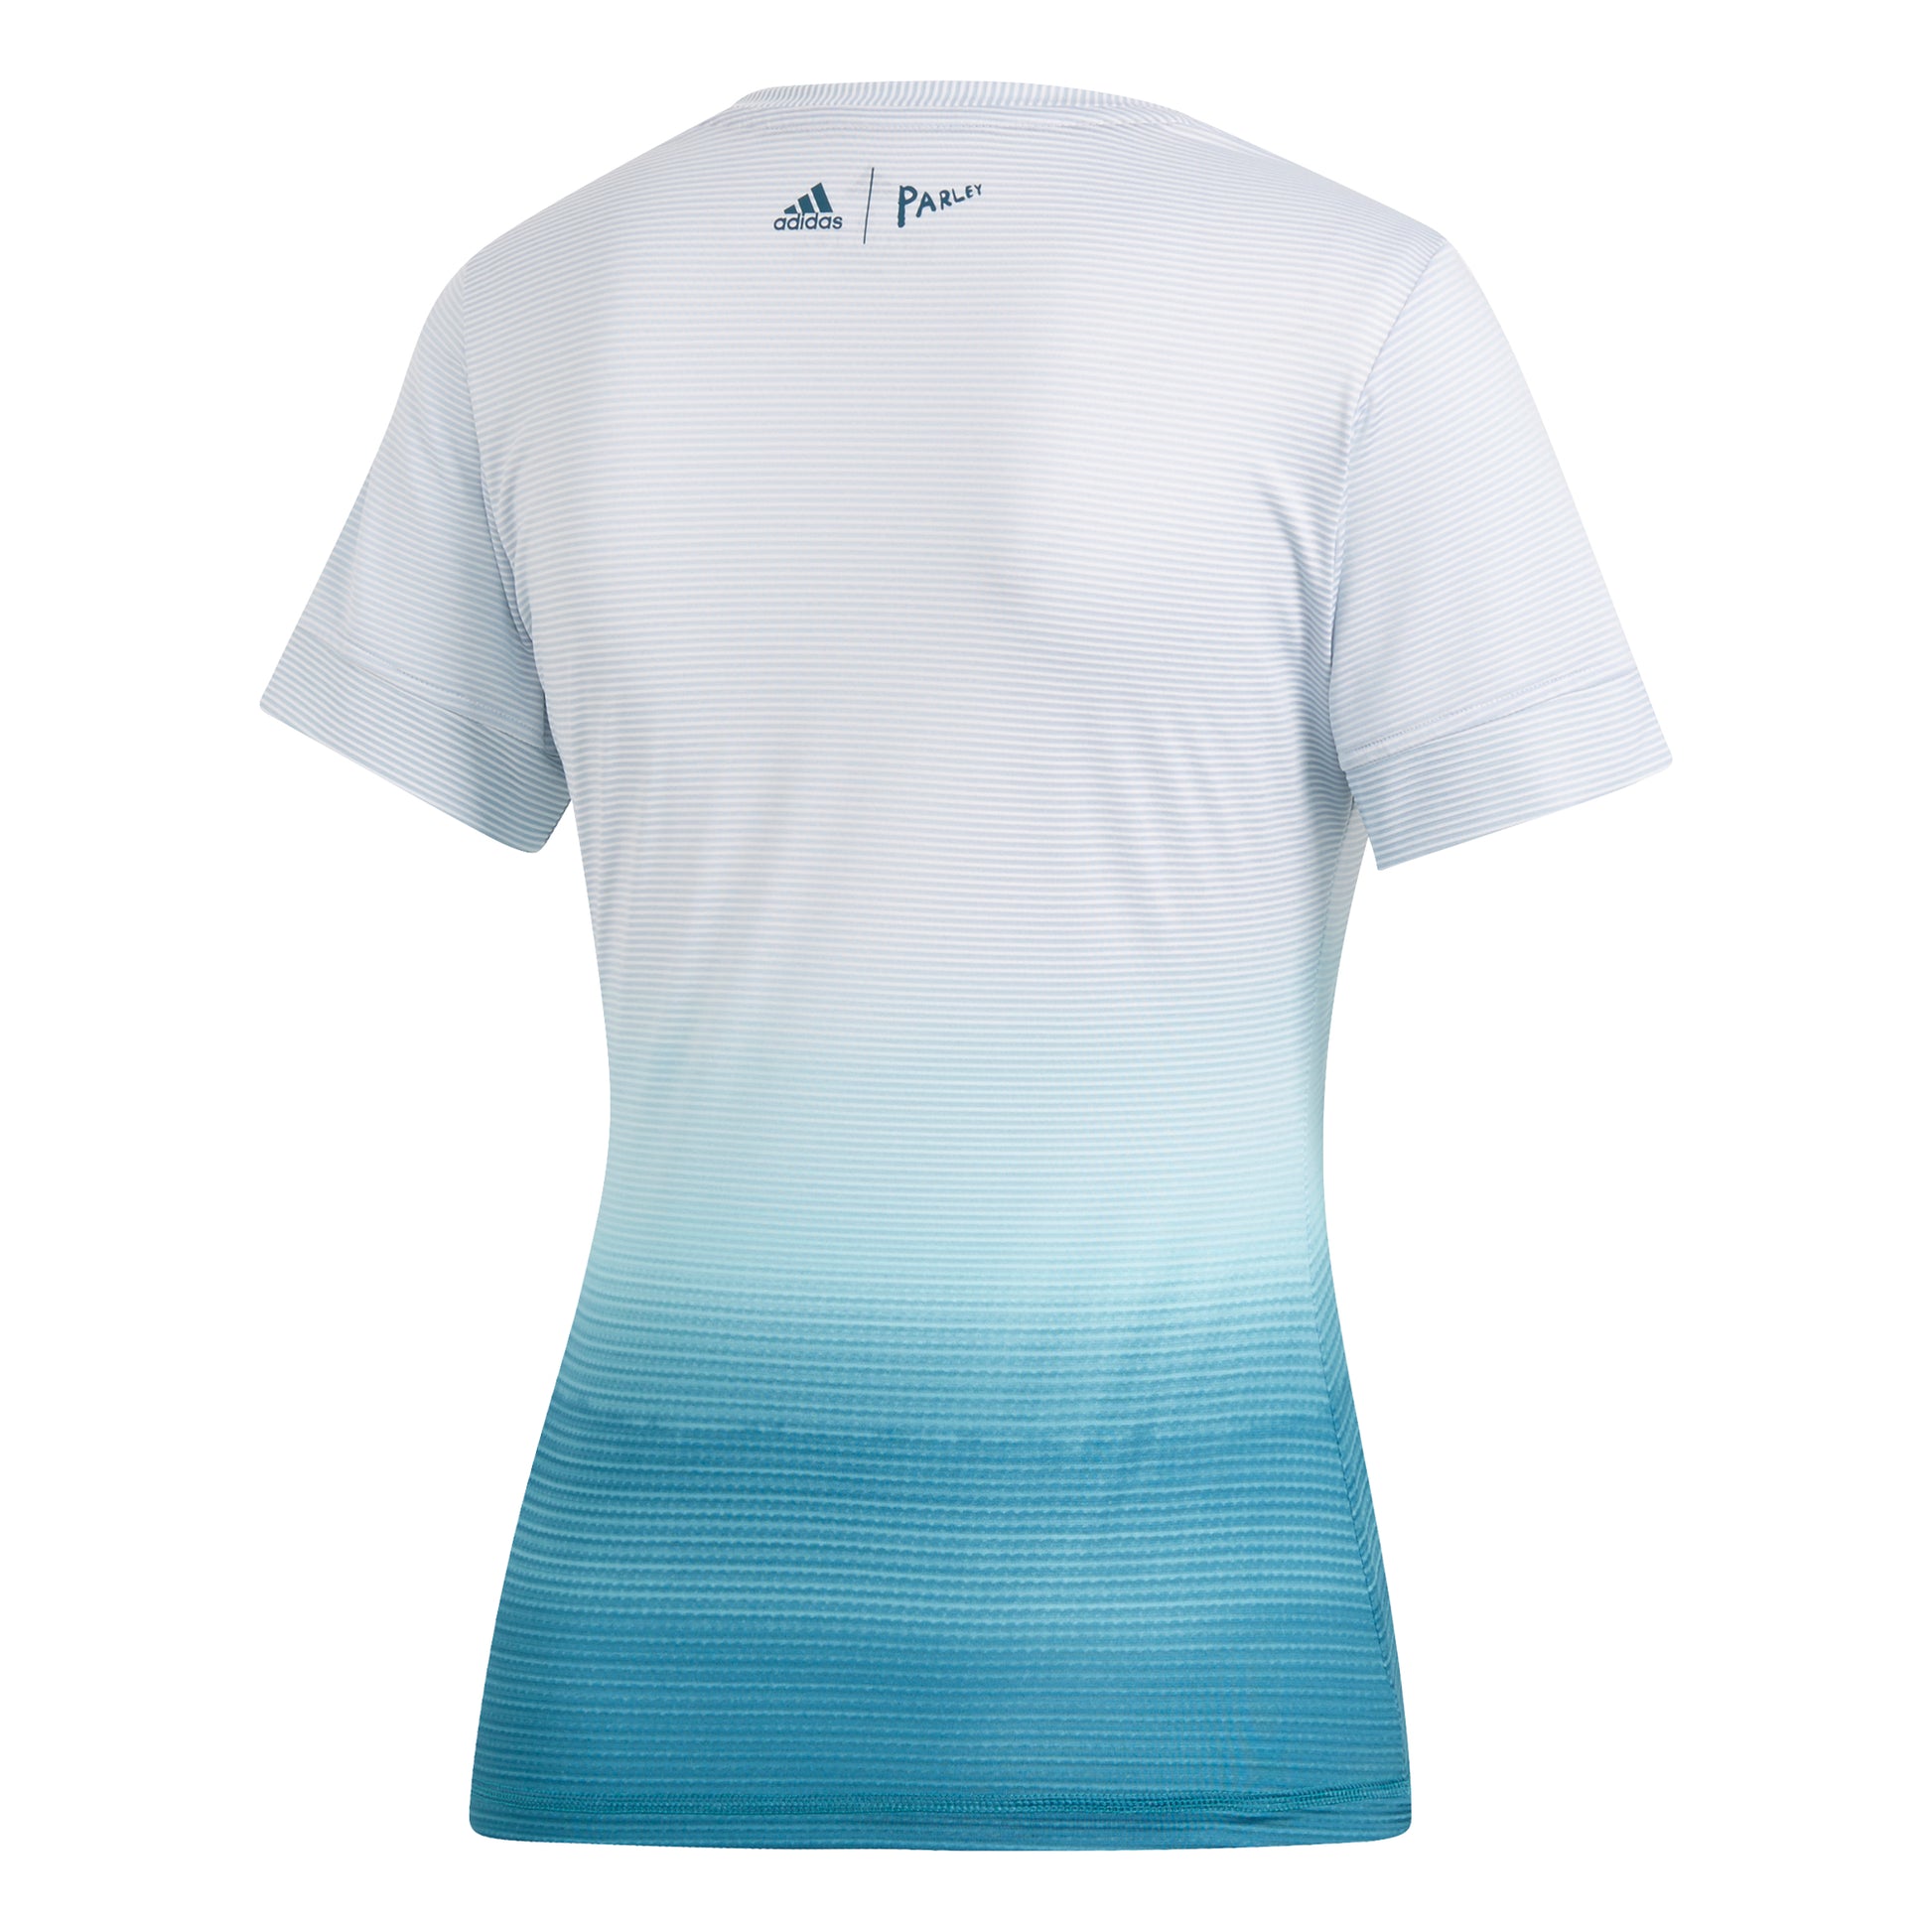 adidas Women's T-shirt - Parley White/Blue DP0270 - VuTennis